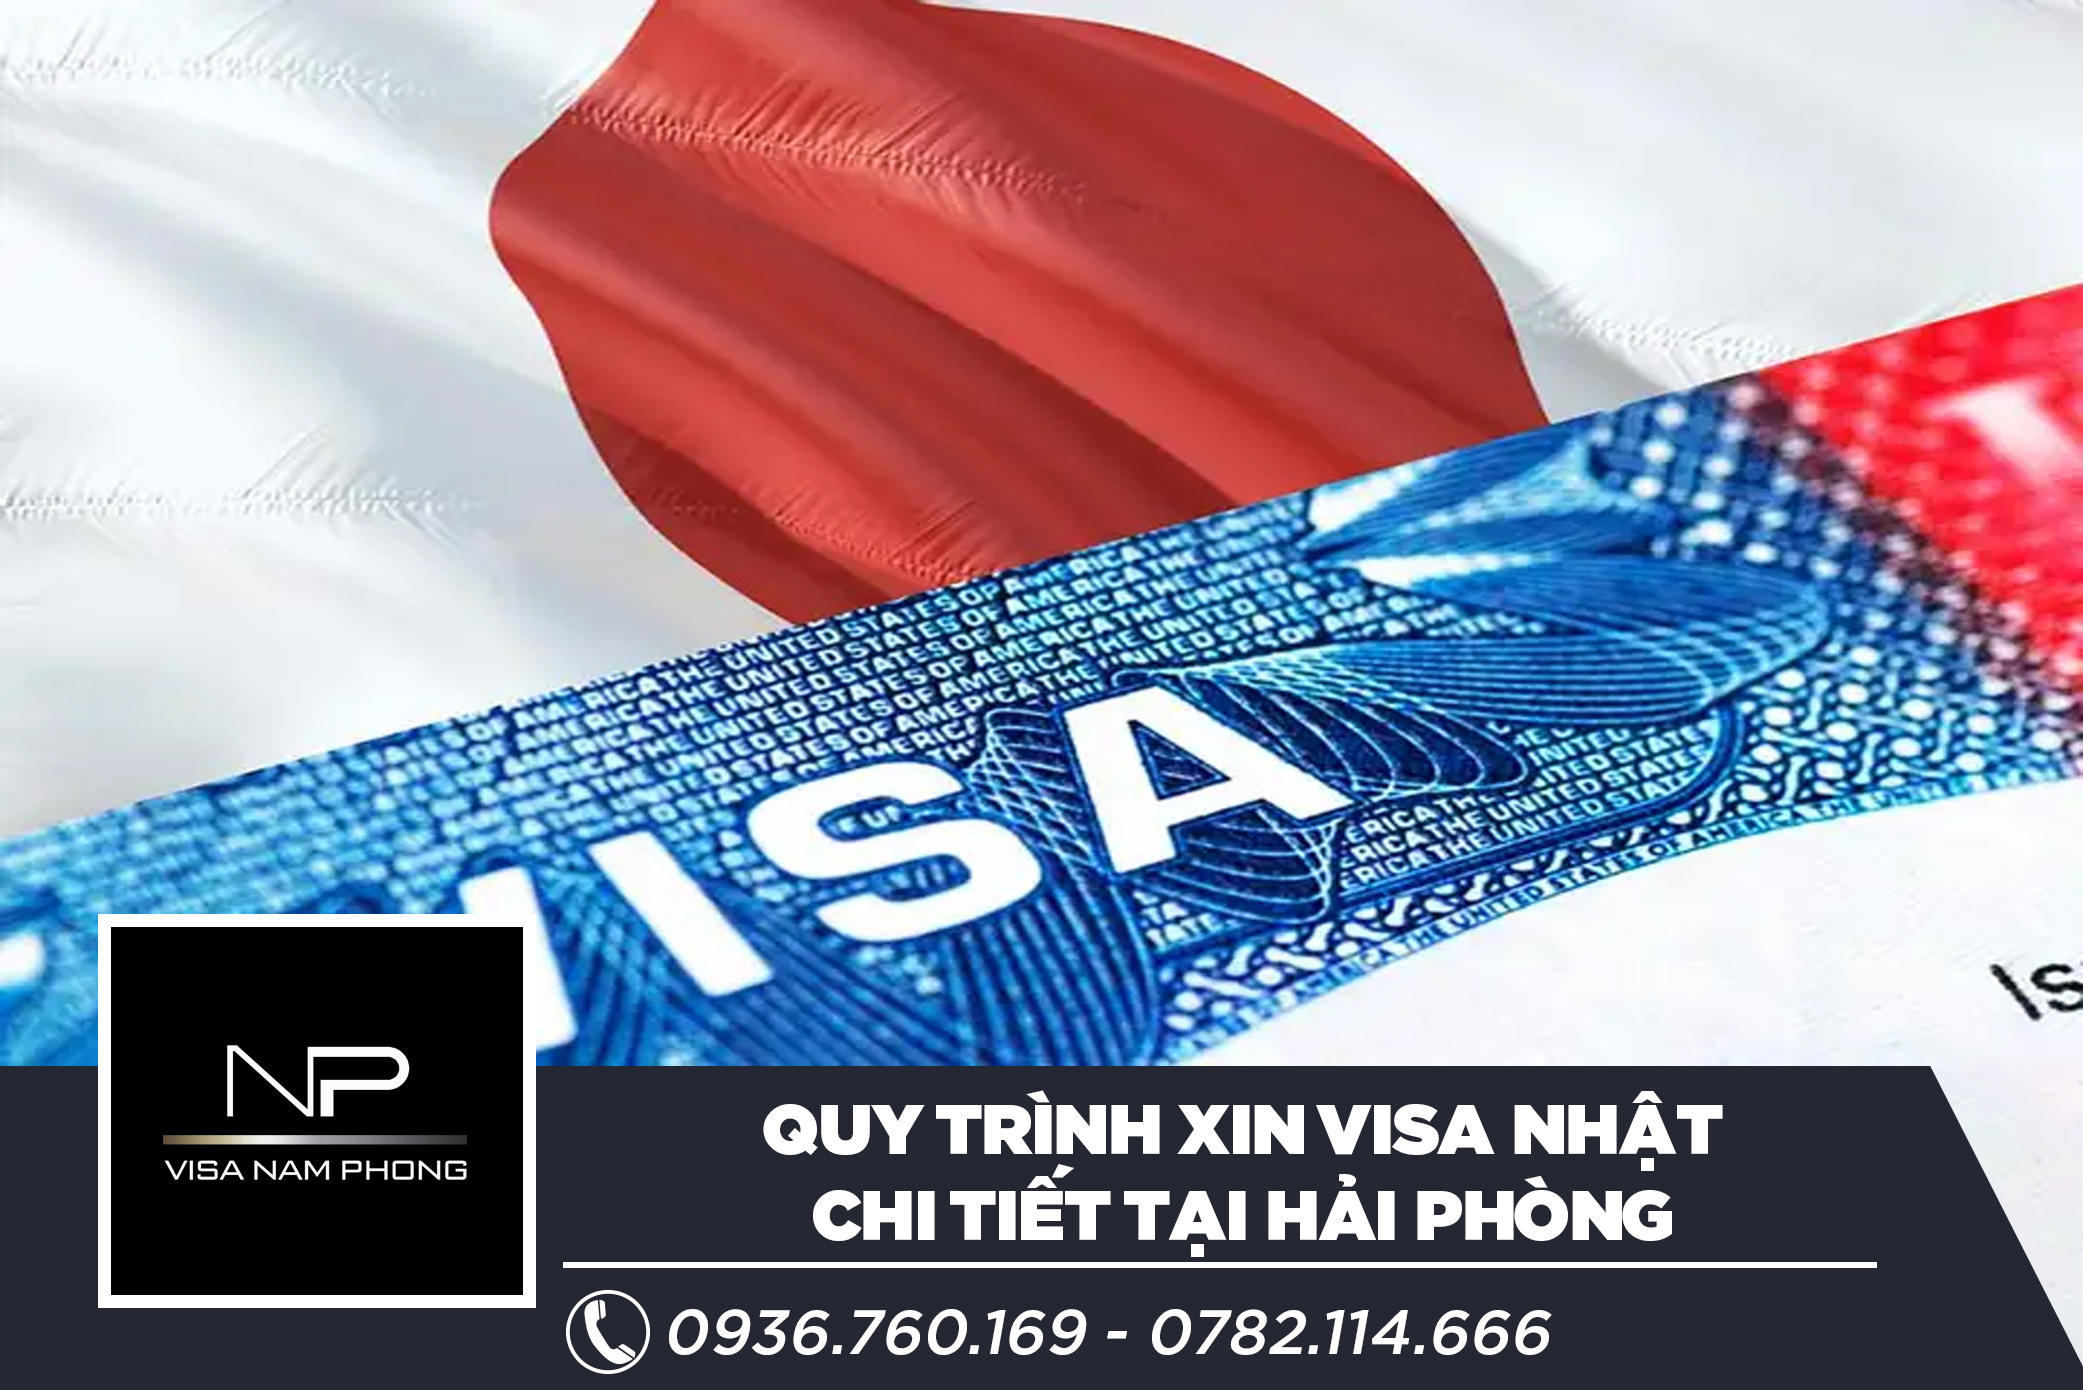 Quy trình xin visa Nhật chi tiết tại Hải Phòng